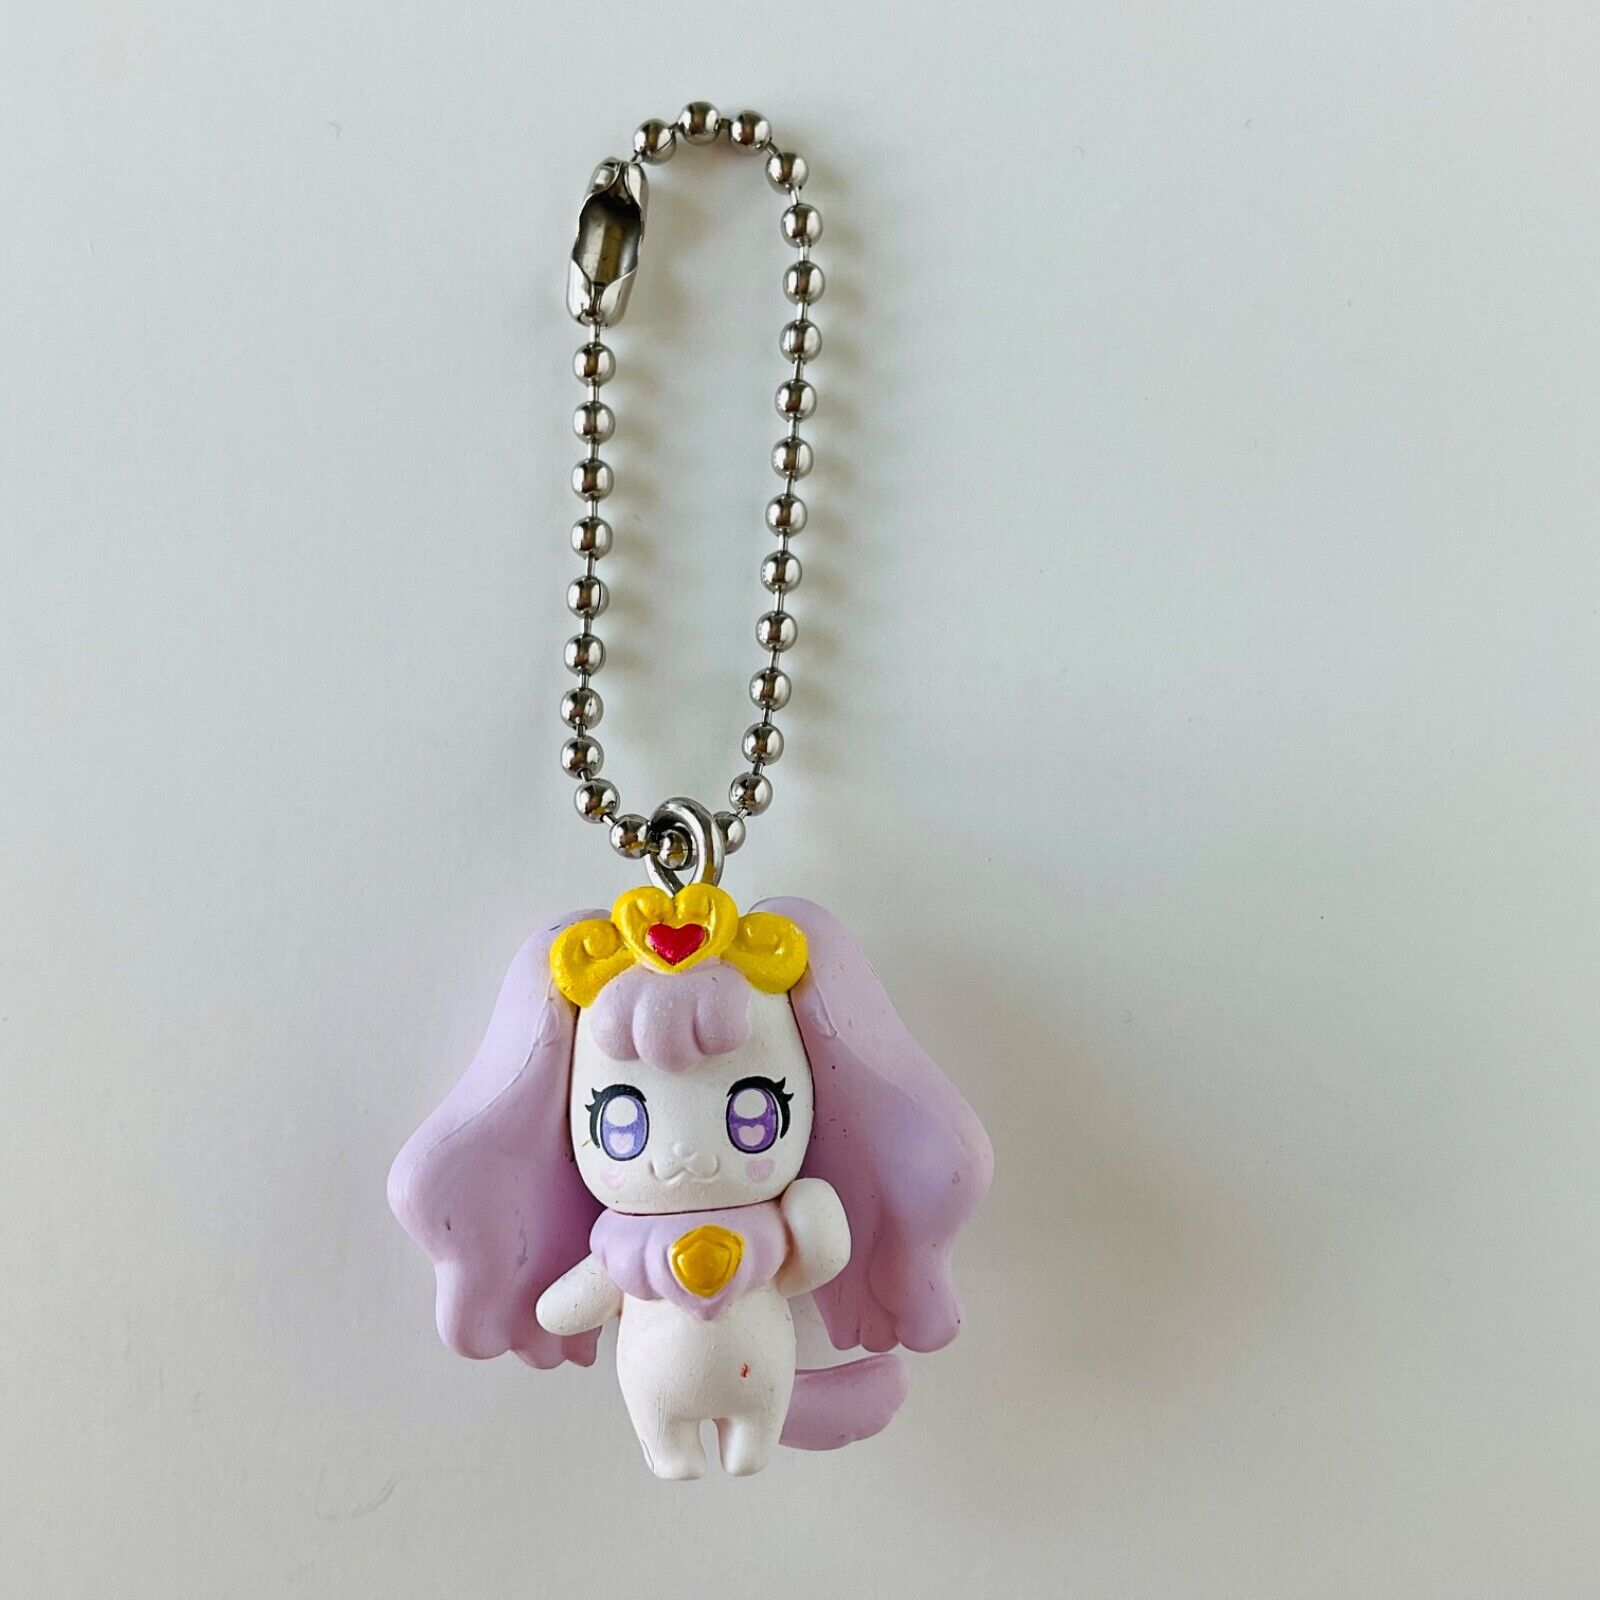 Go Princess PreCure Pafu Keychain Figure Bandai Anime Japan Pretty Cure 2015